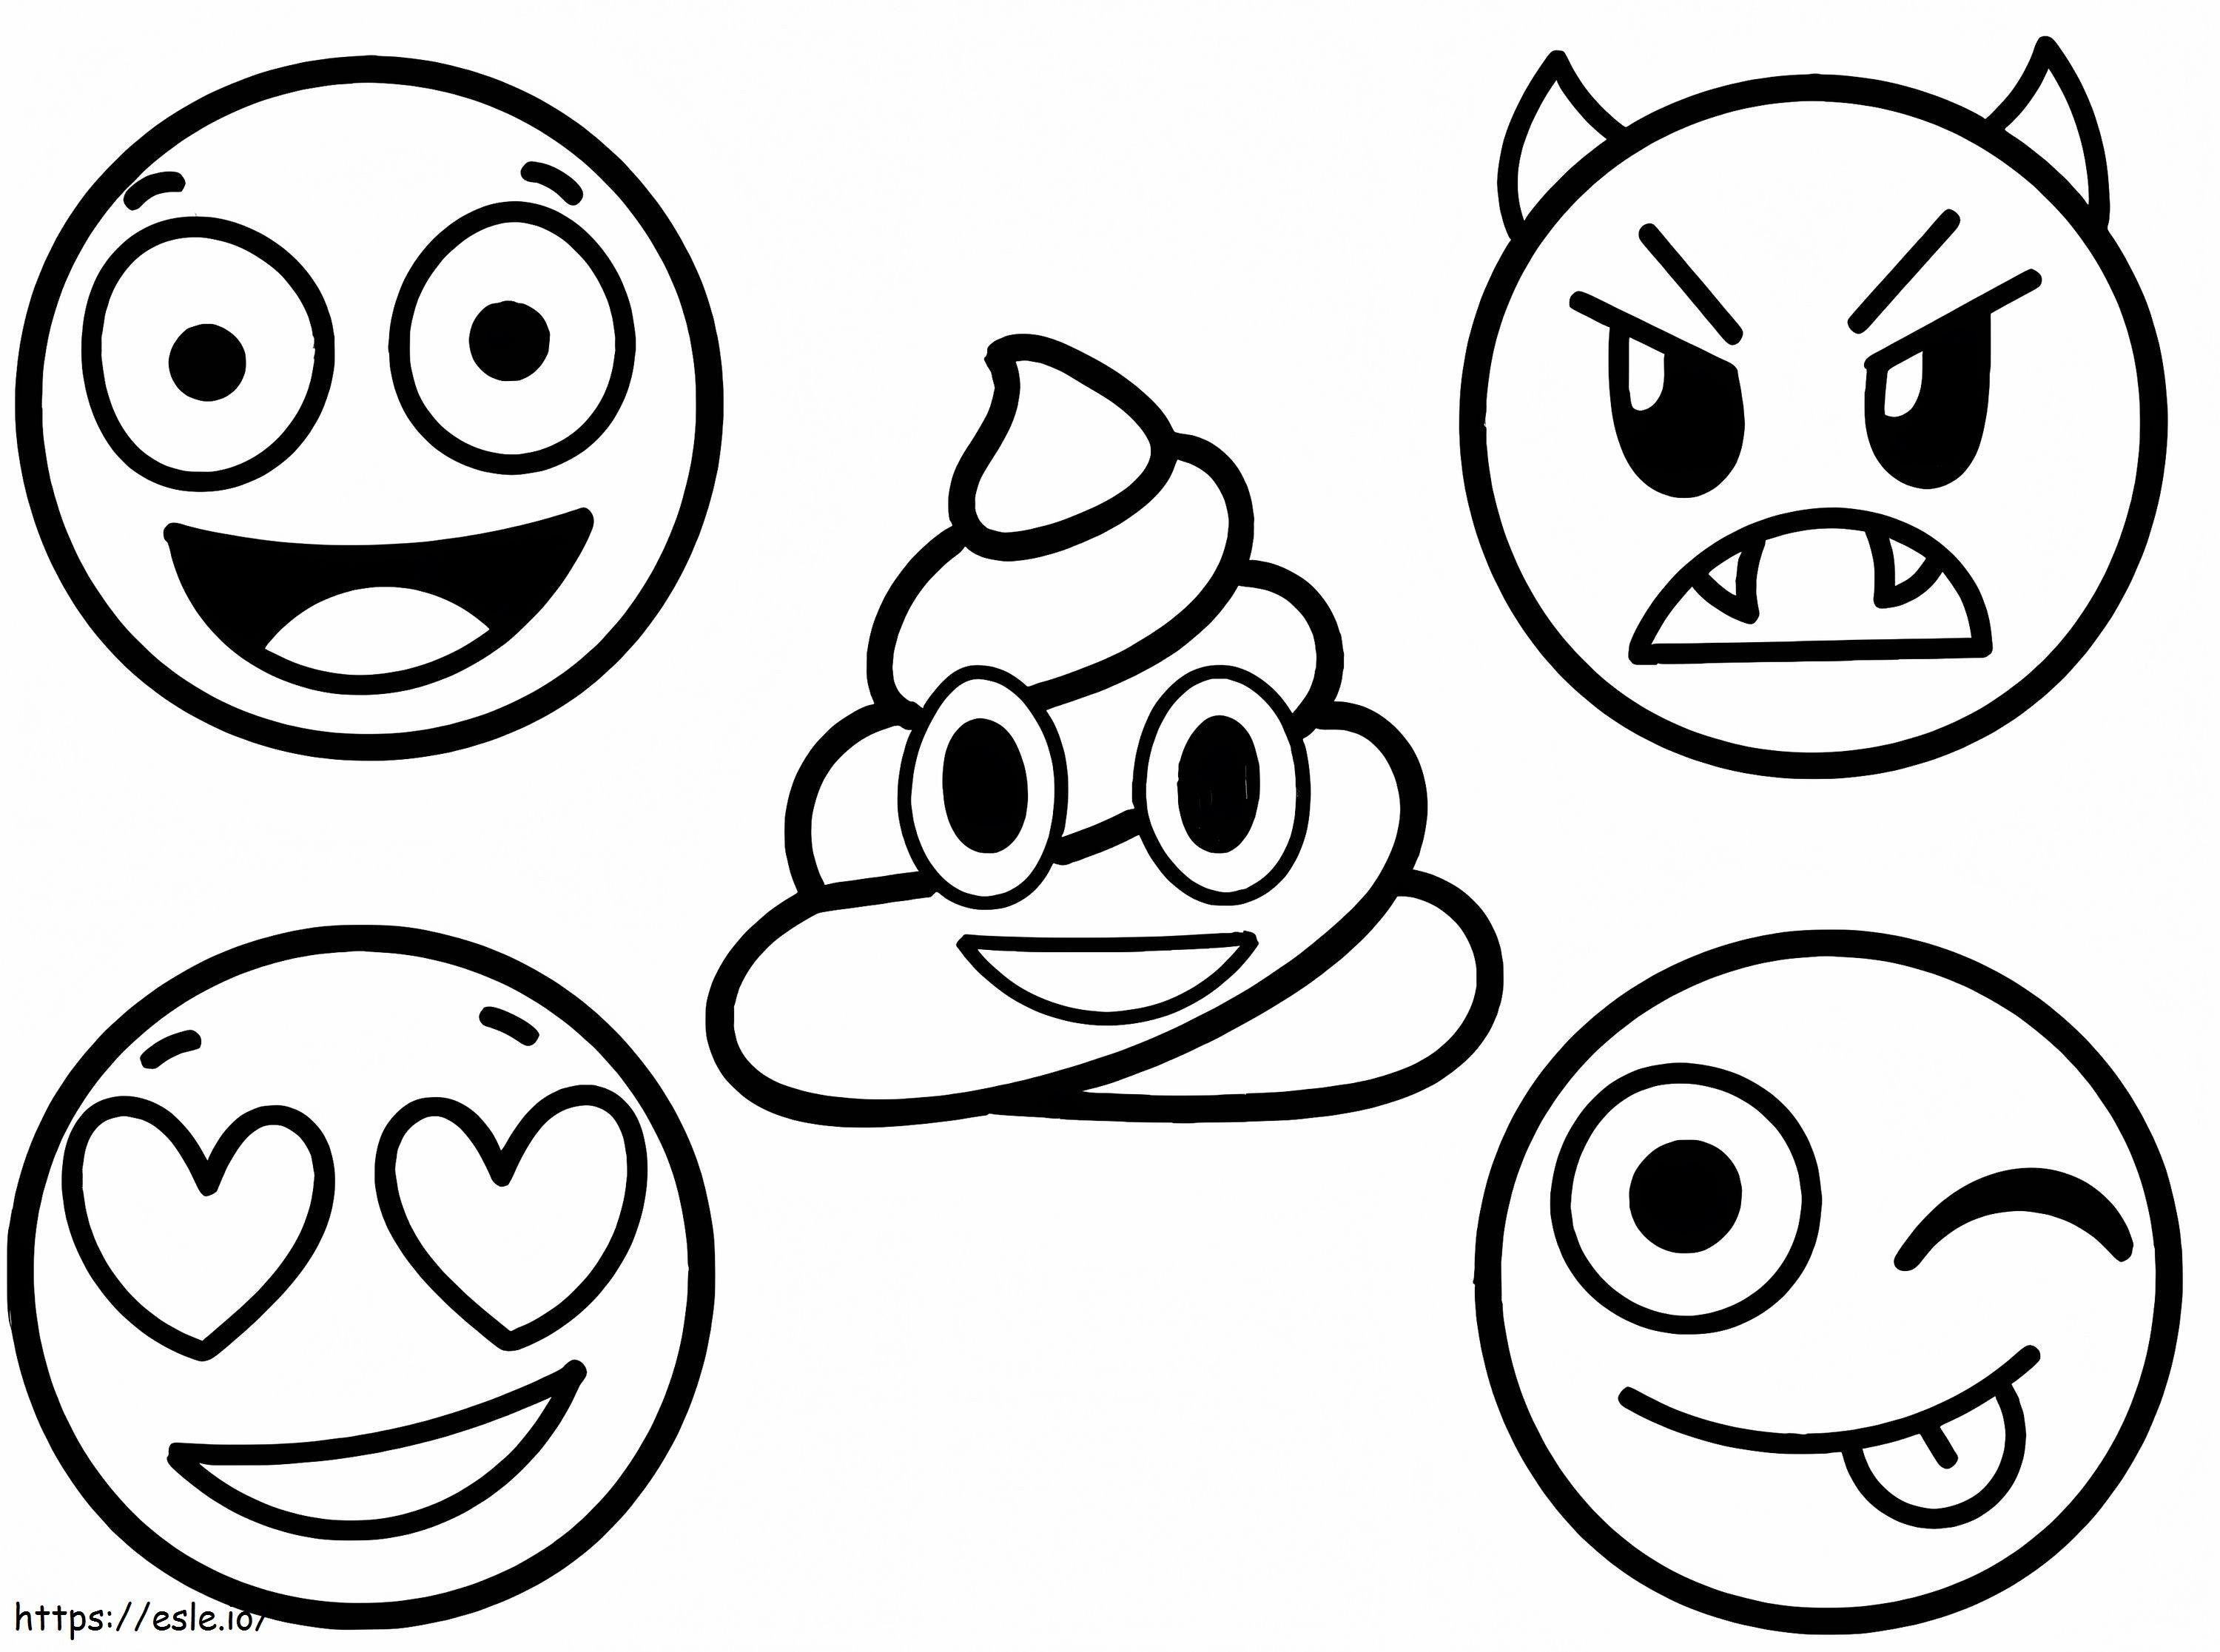 Cinco emojis para colorear